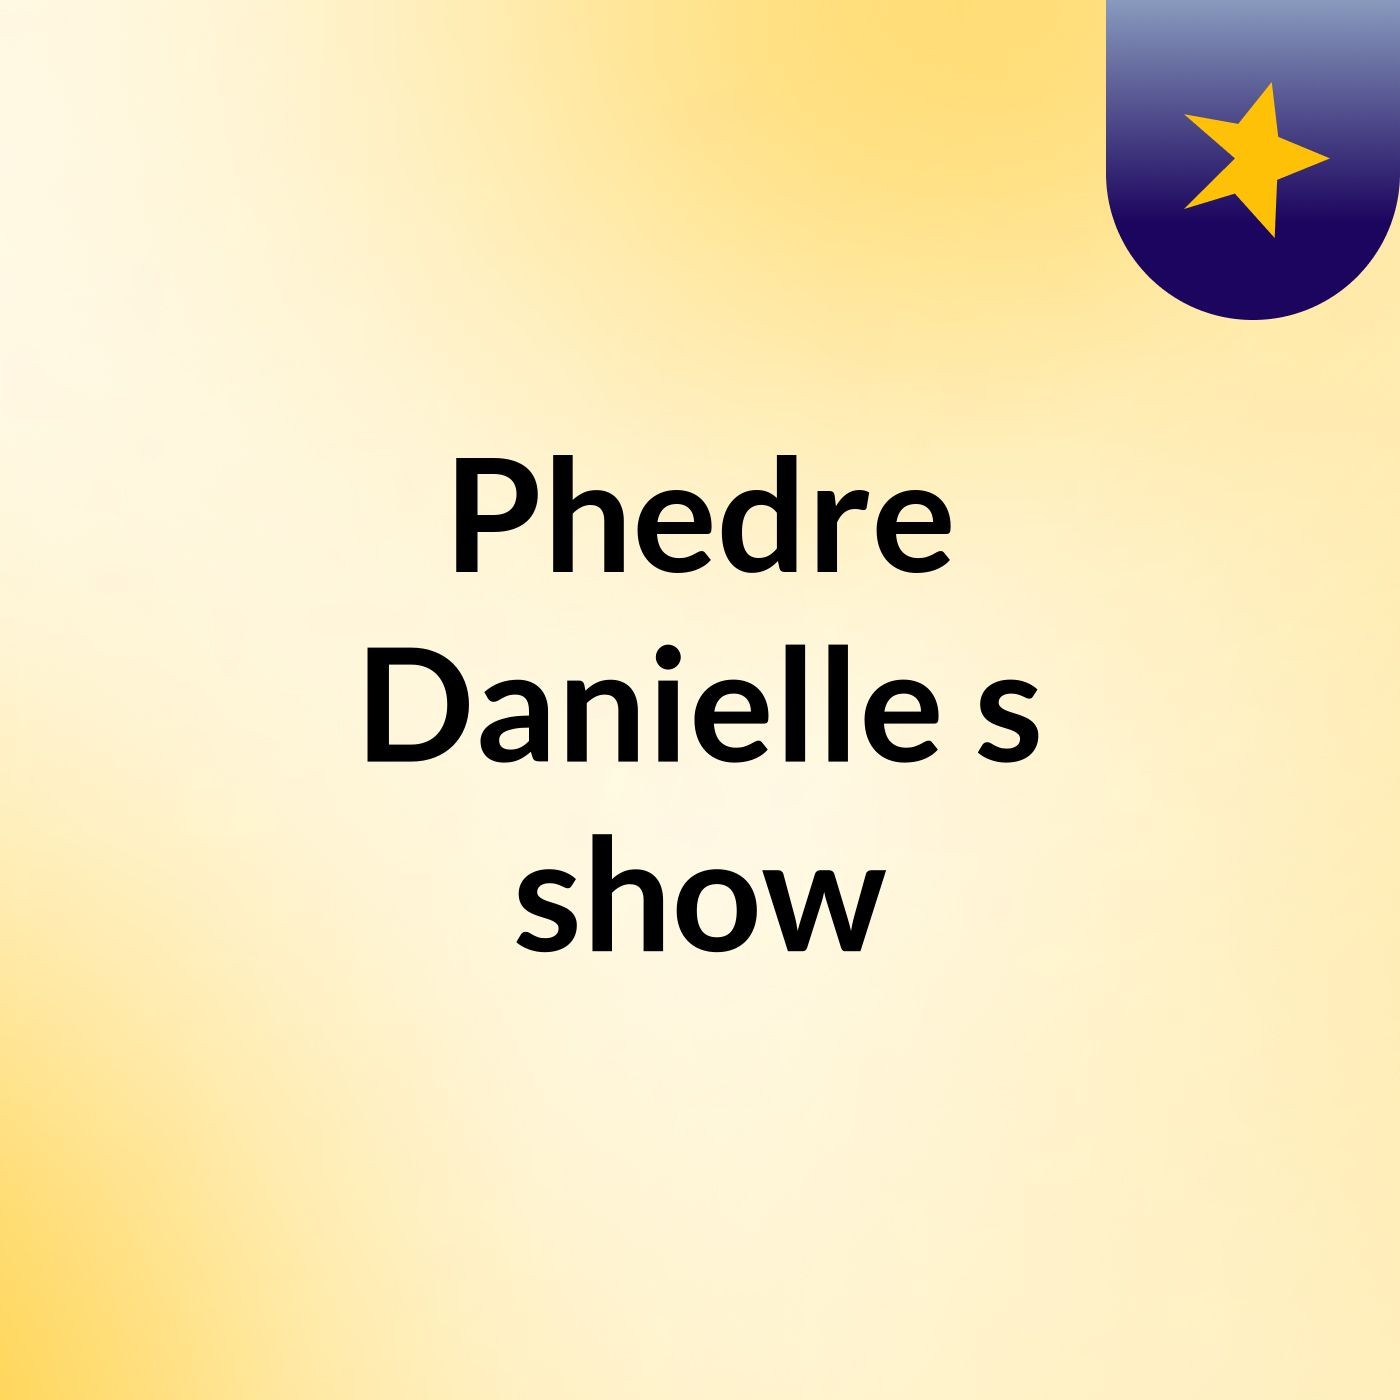 Phedre Danielle's show